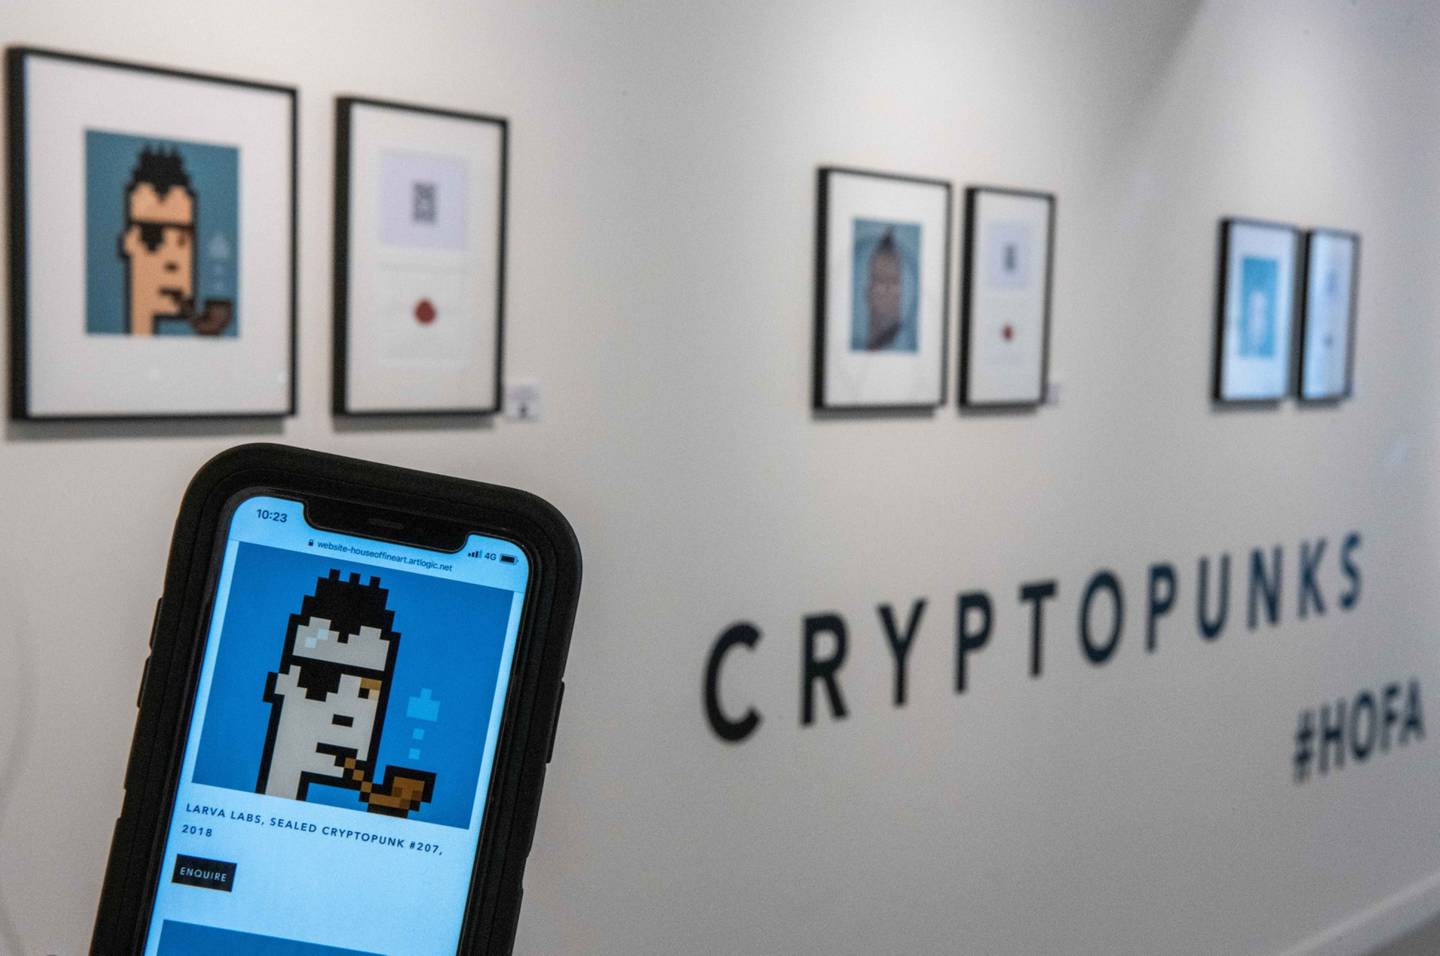 Un asistente de la galería sostiene un teléfono inteligente que muestra la litografía firmada "Sealed Cryptopunk # 207" de Larva Labs.